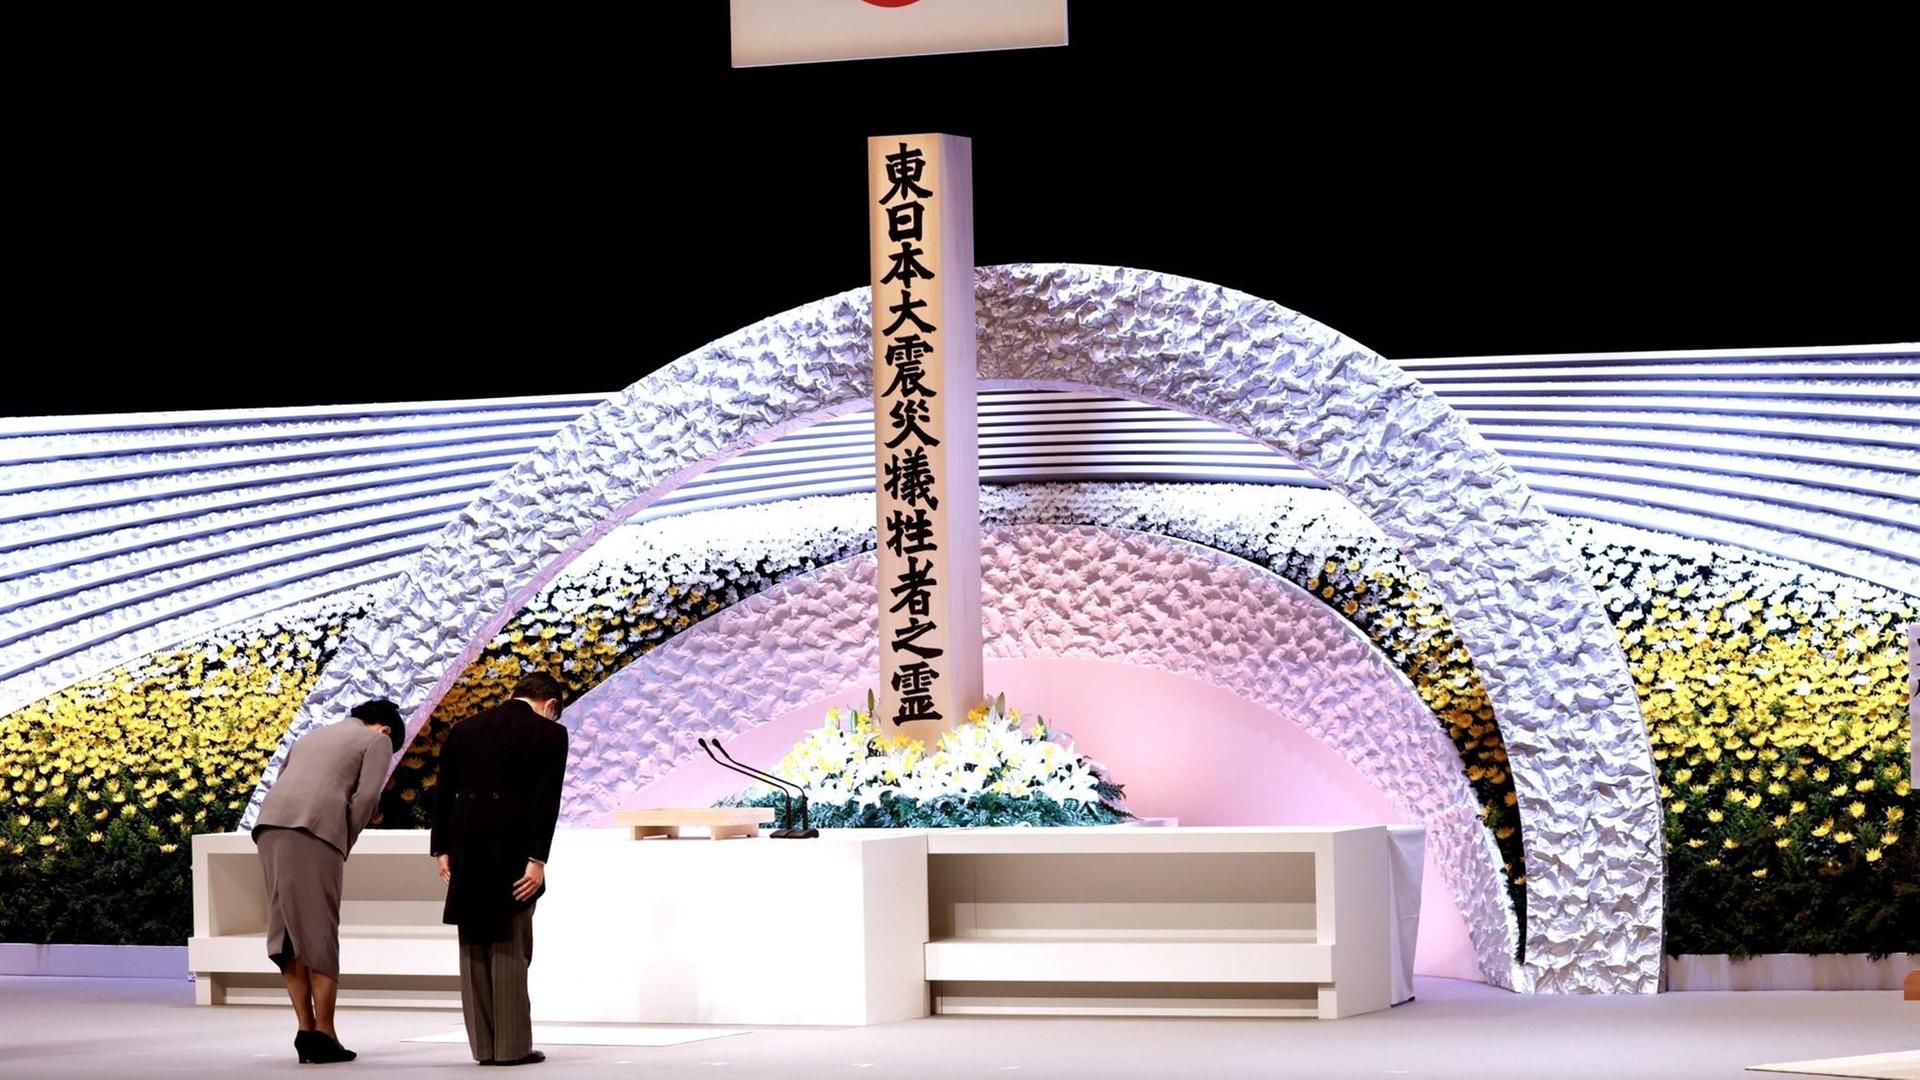 Der Kaiser von Japan und seine Frau verbeugen sich vor einem Altar.